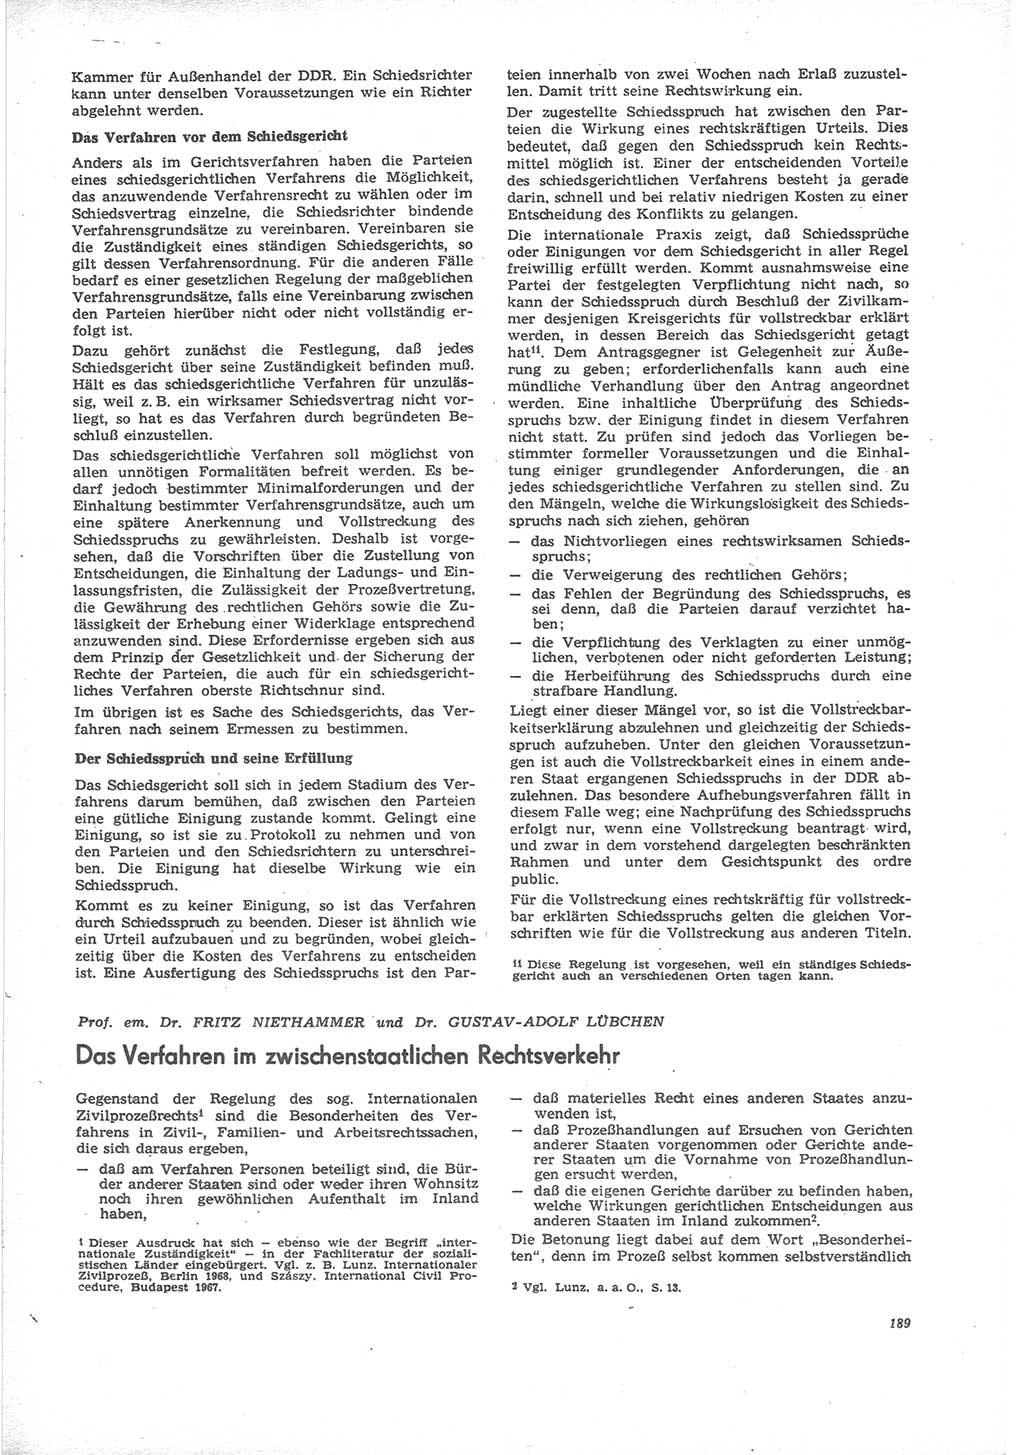 Neue Justiz (NJ), Zeitschrift für Recht und Rechtswissenschaft [Deutsche Demokratische Republik (DDR)], 24. Jahrgang 1970, Seite 189 (NJ DDR 1970, S. 189)